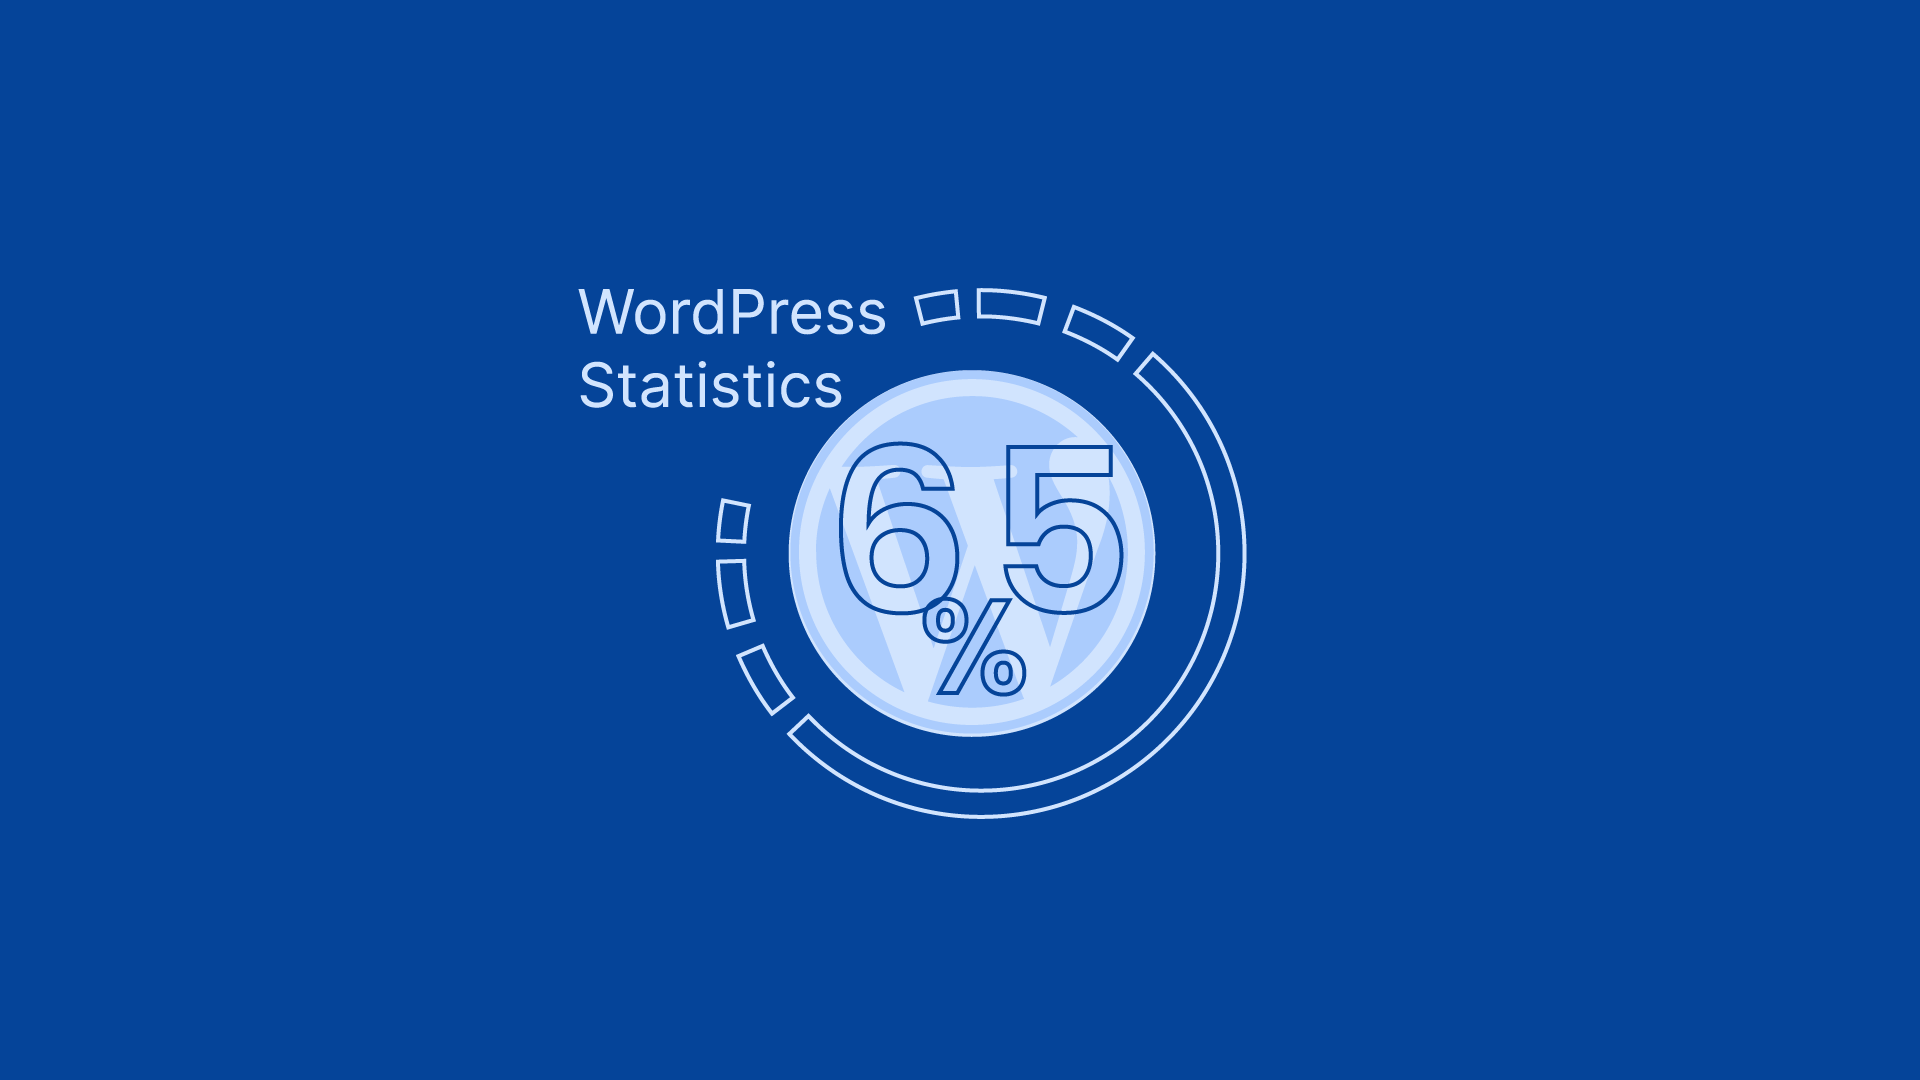 WordPress Statistics you should know